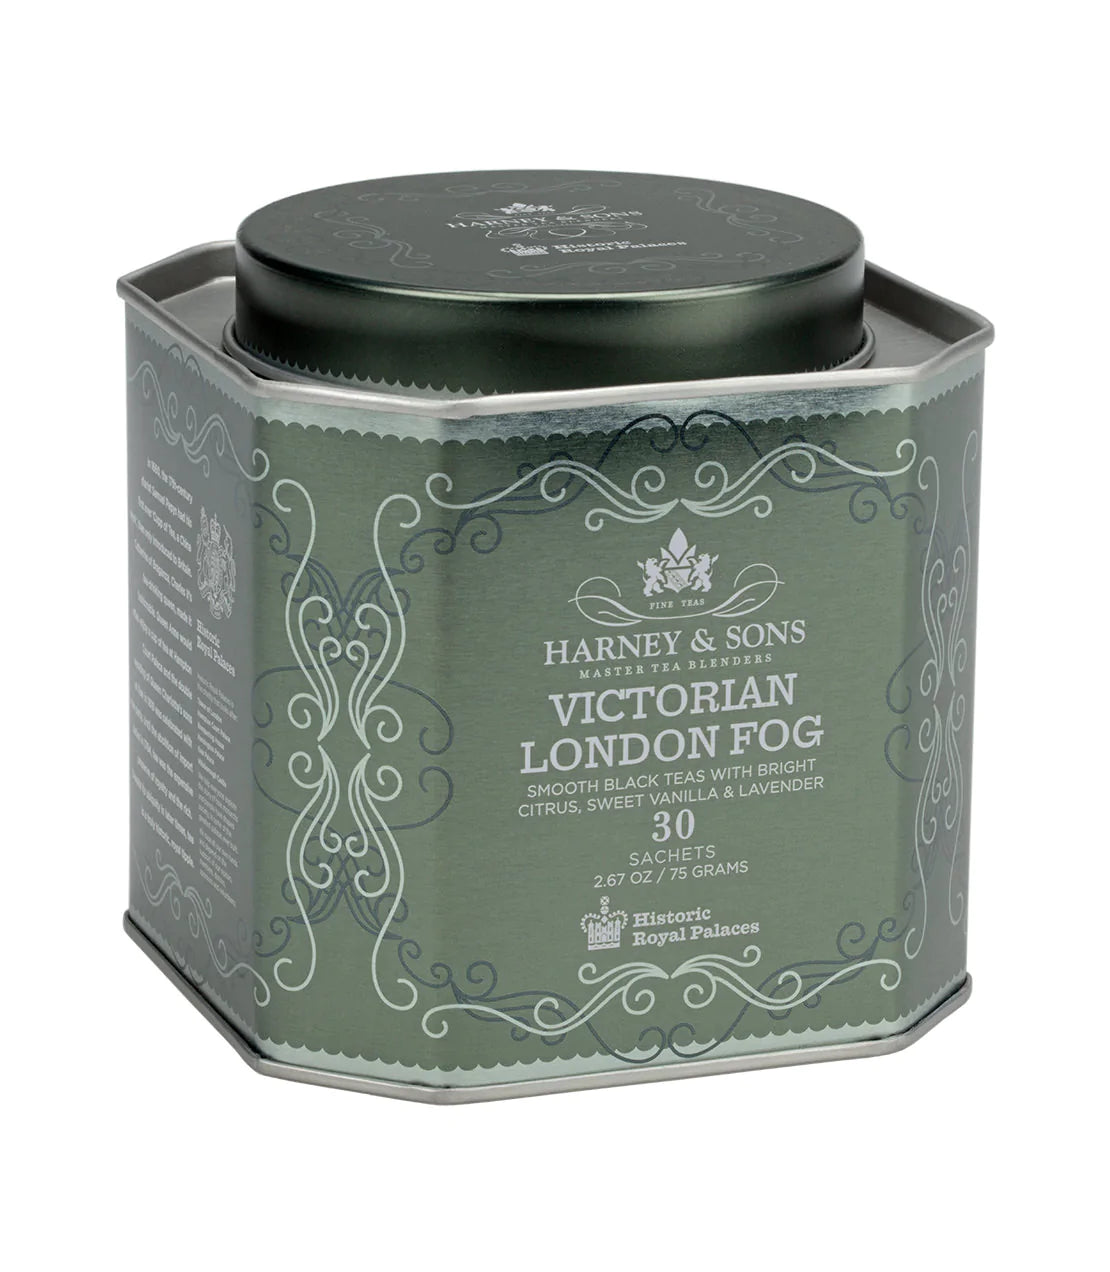 Victorian London Fog Tea Tin- Harney & Sons